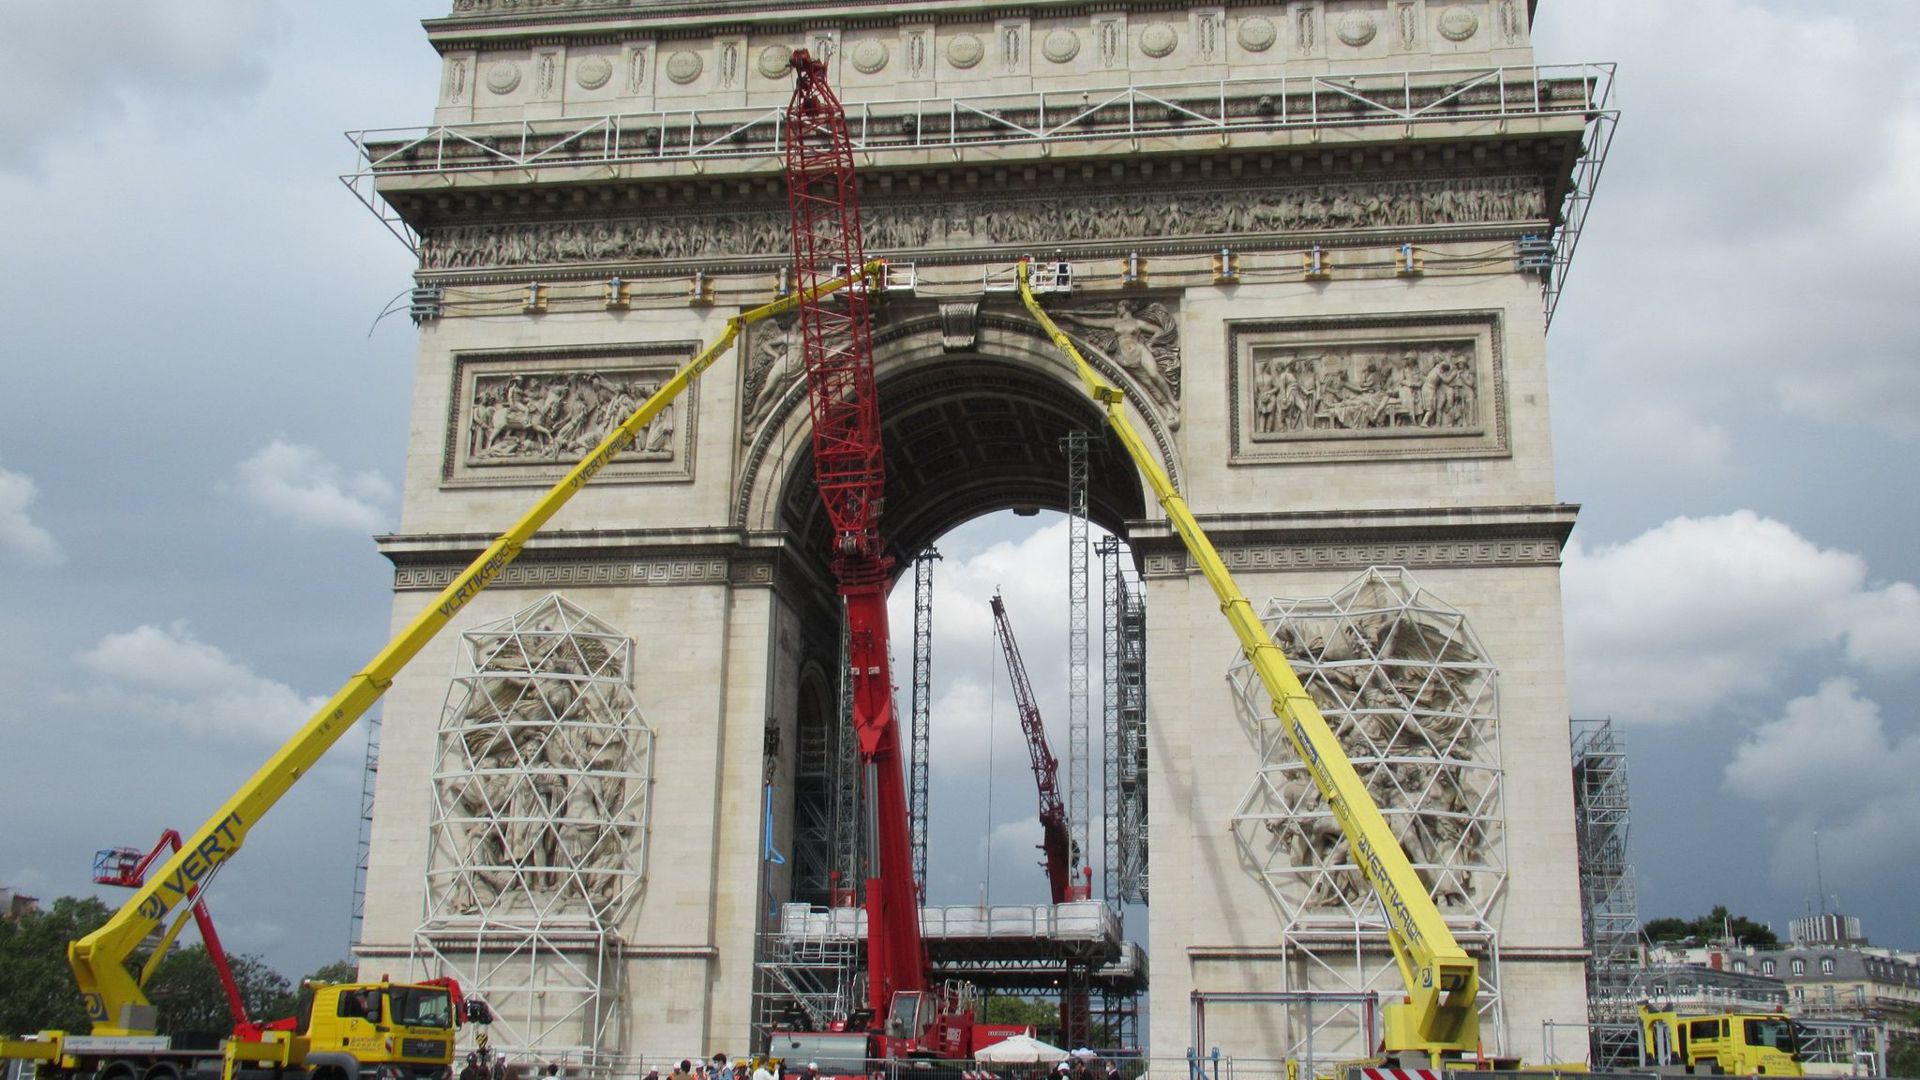 Kräne und Gerüste, aufgenommen vor der bevorstehenden Christo-Verhüllung des Pariser Triumphbogens.